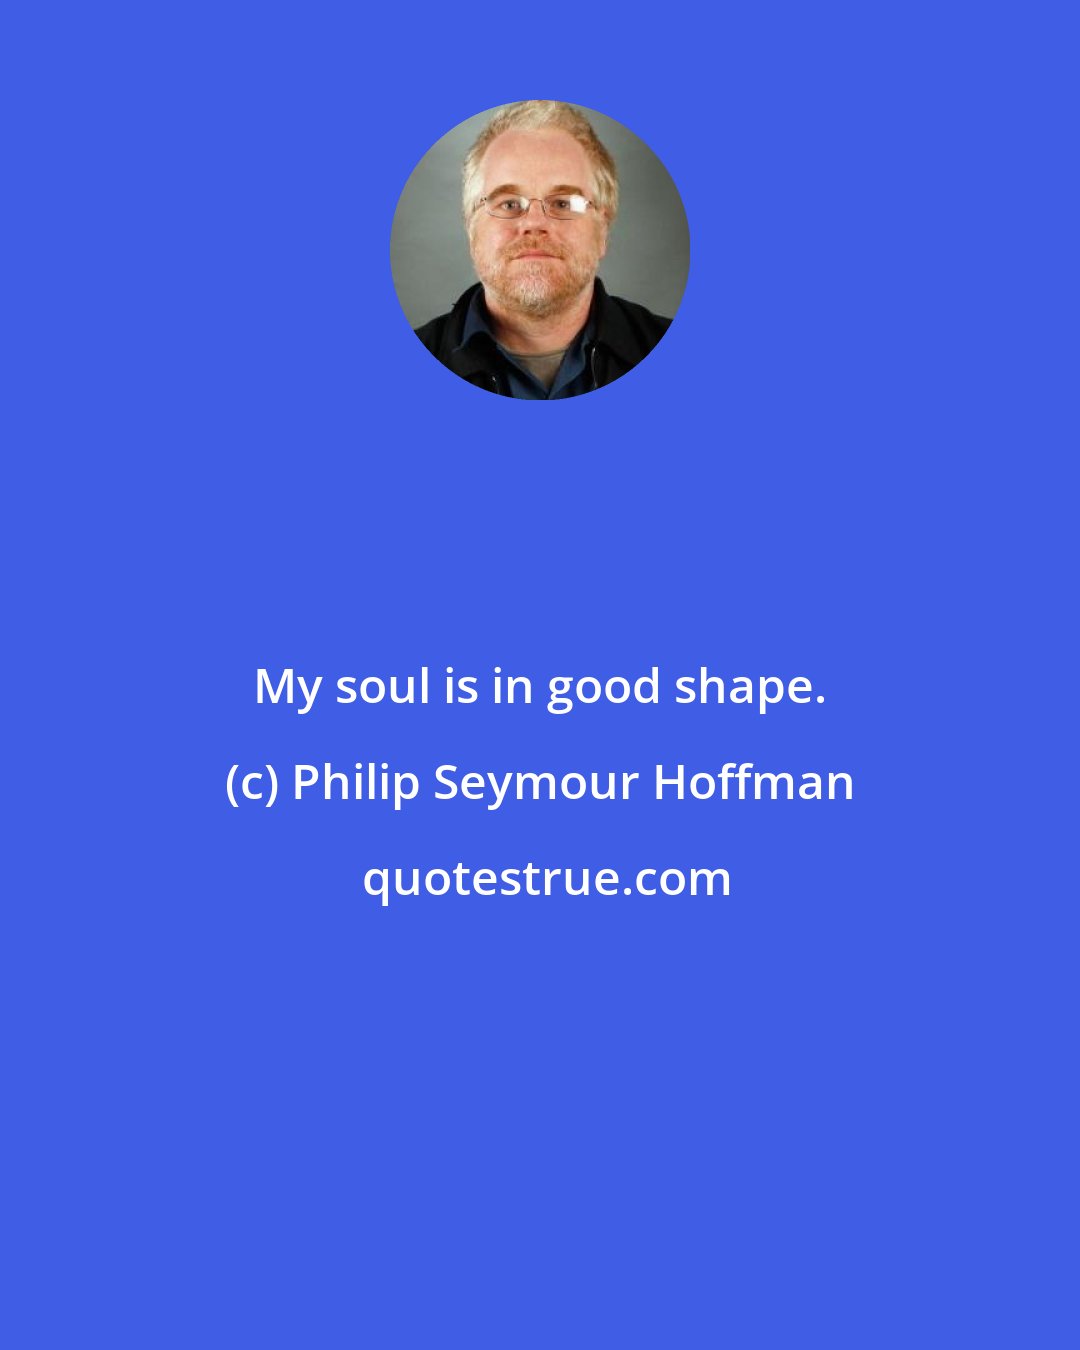 Philip Seymour Hoffman: My soul is in good shape.